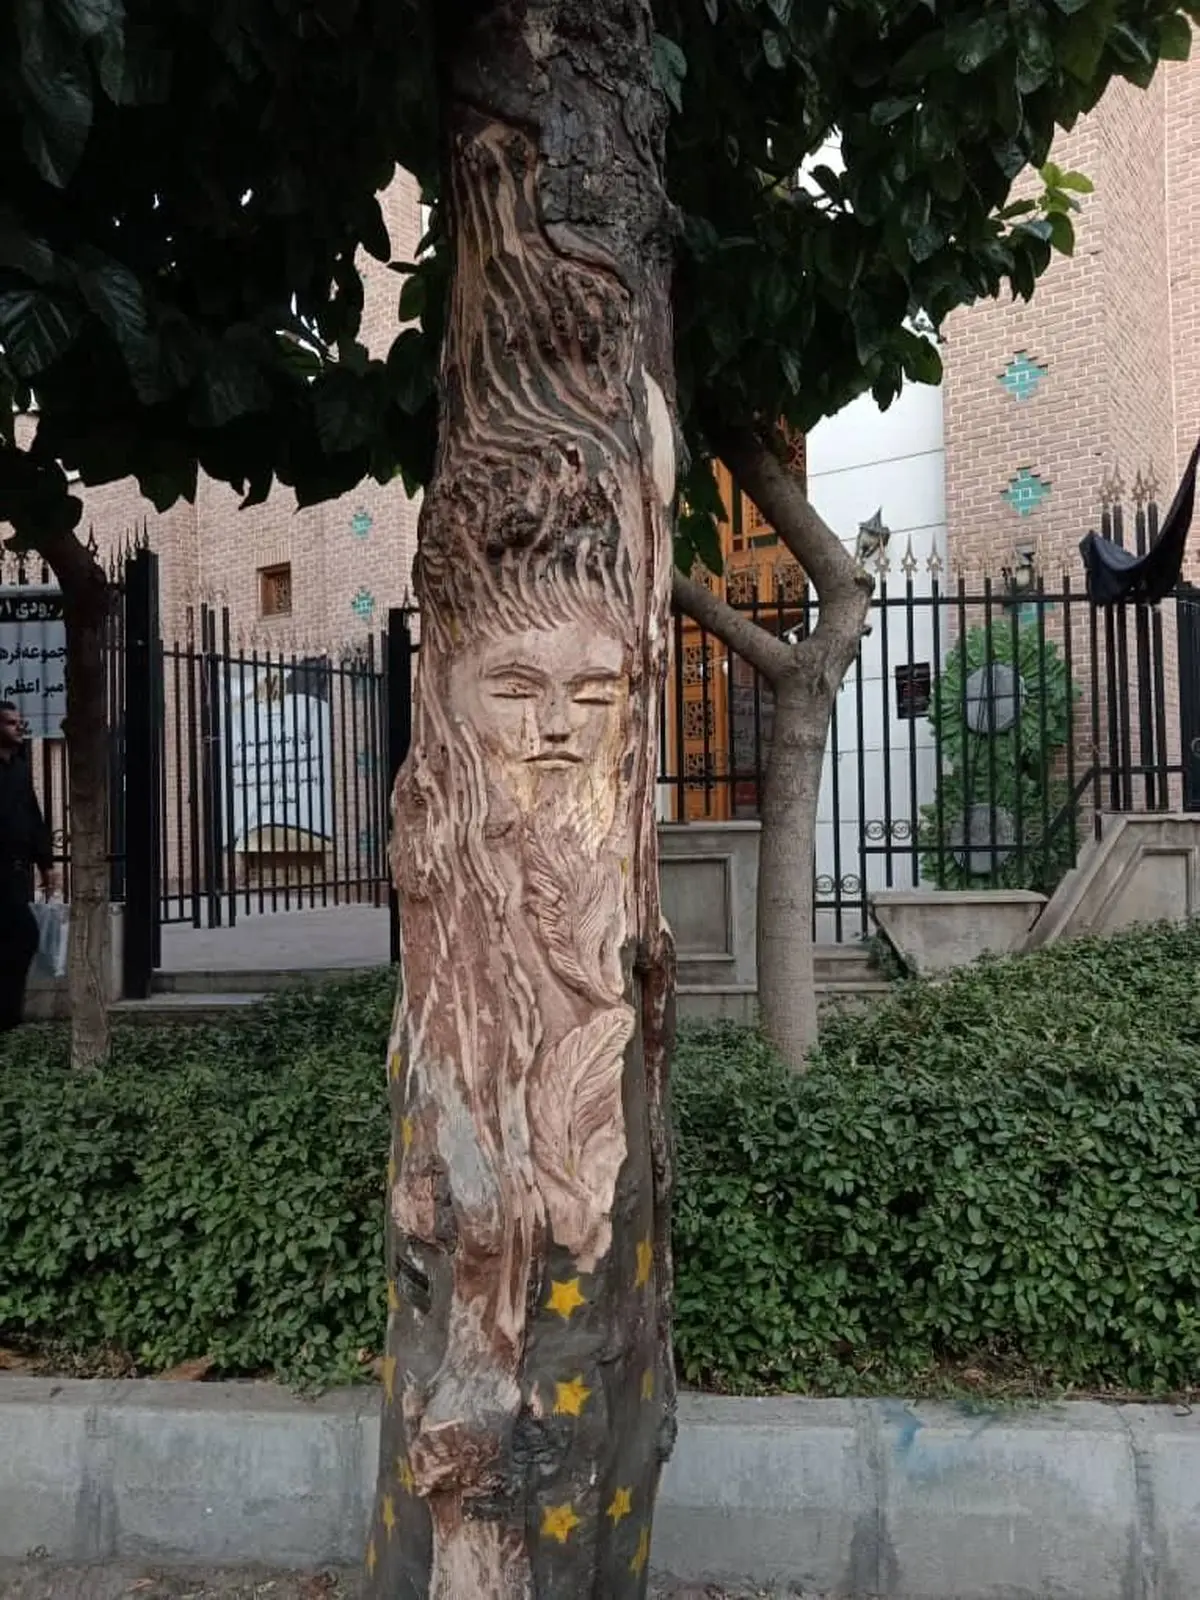 قطع درخت ارزشمند به خاطر نقش زن روی آن در تهران + عکس 